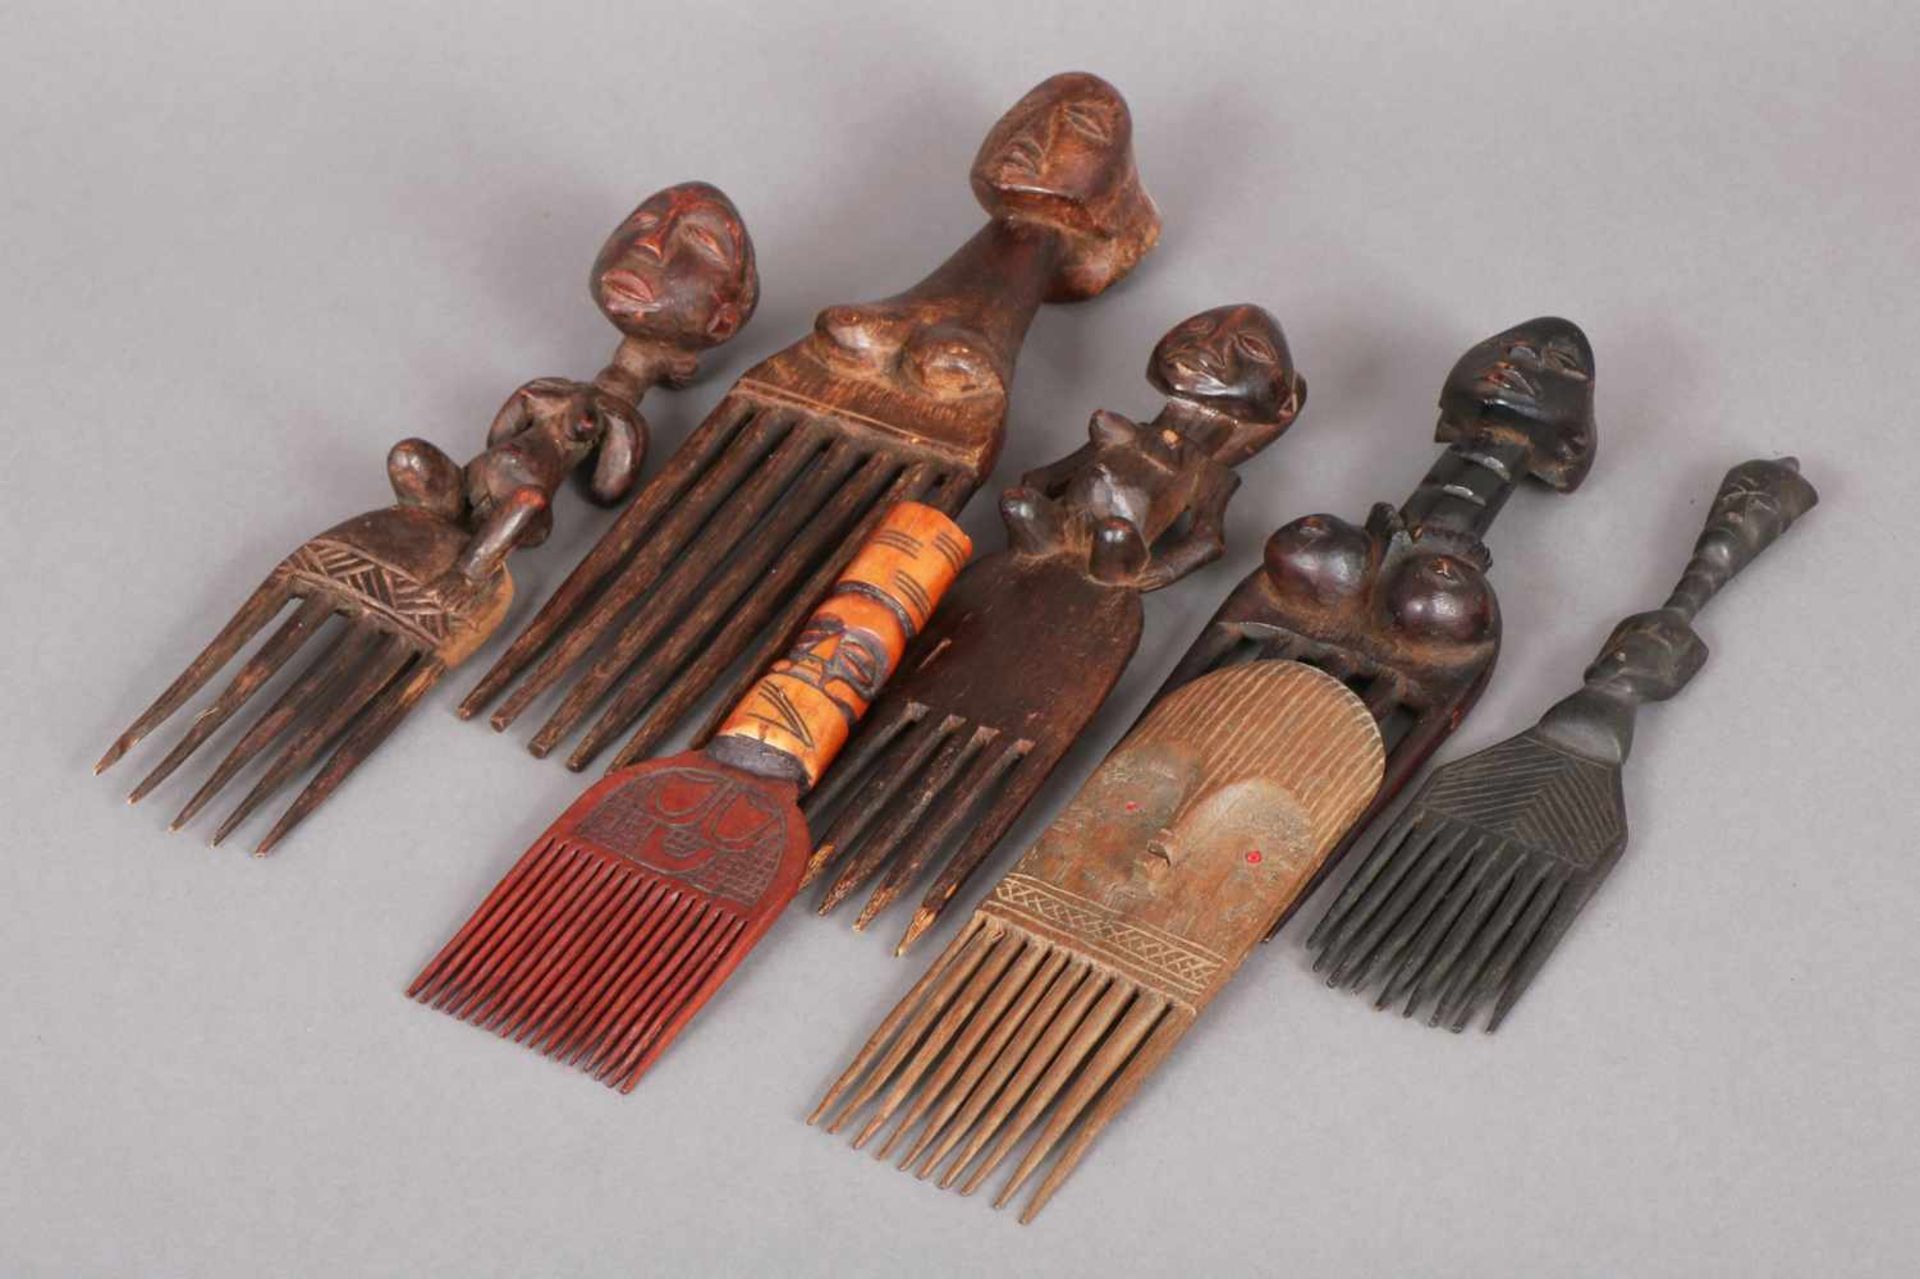 Sammlung afrikanischer Holz-Kämme (7 Stück) West- und Zentralafrika (u.a. Luba, Kongo), meist mit